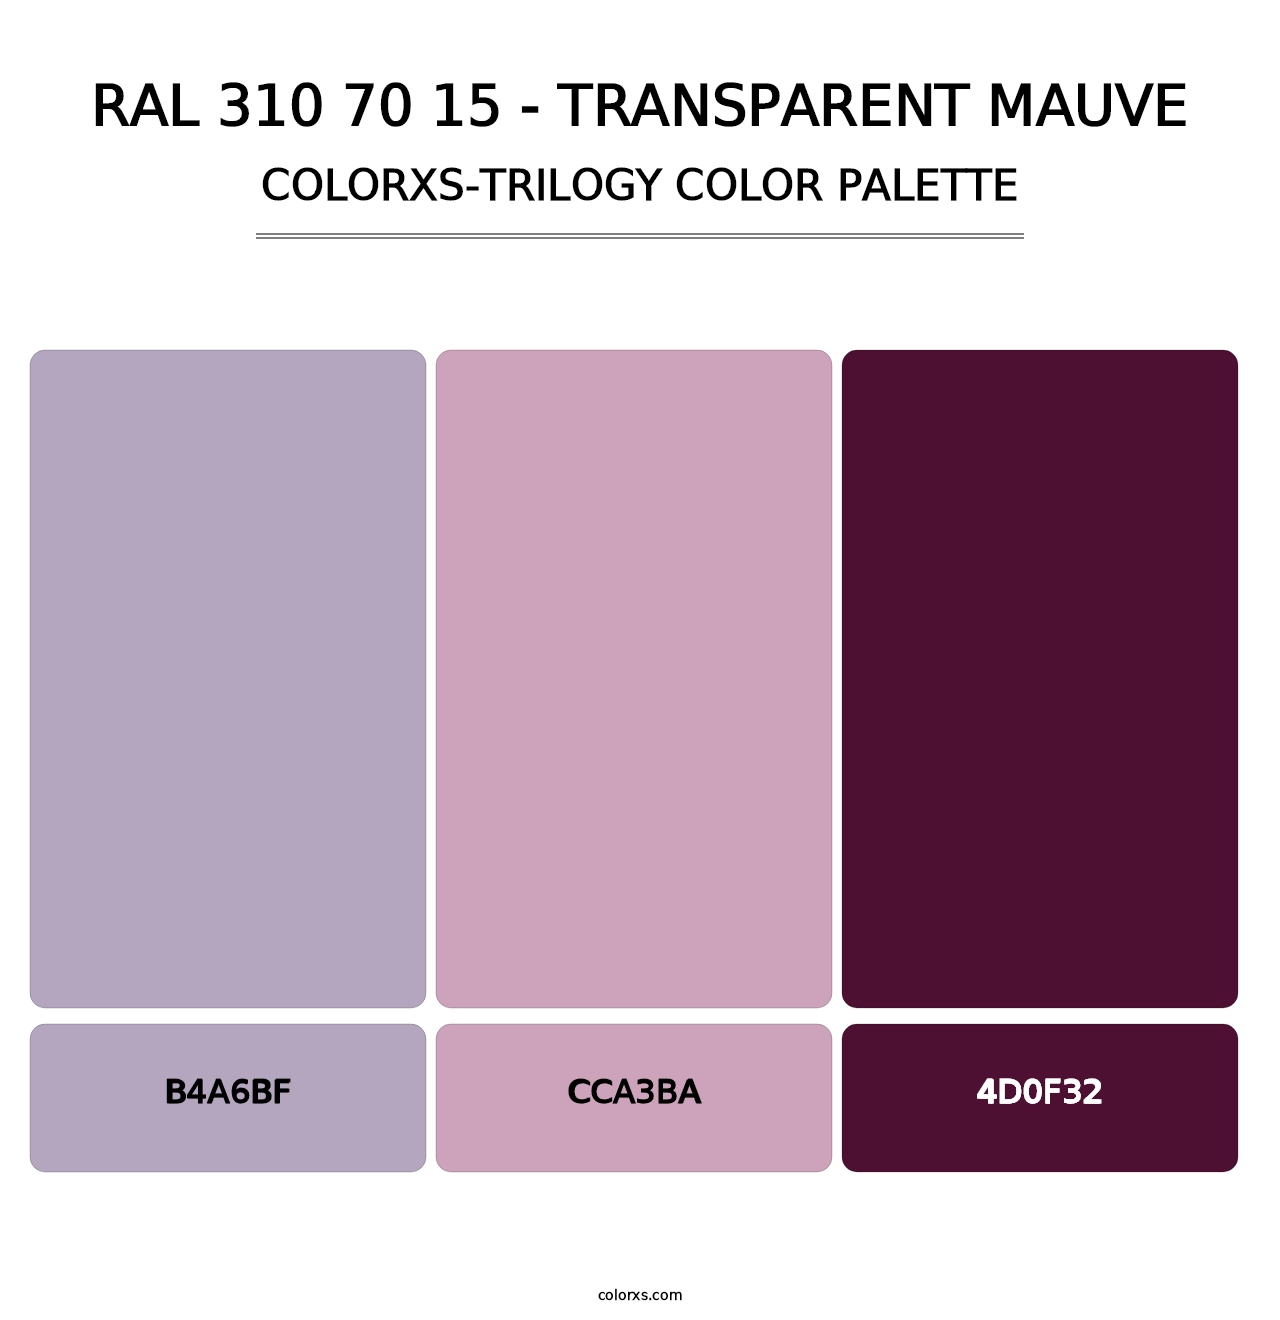 RAL 310 70 15 - Transparent Mauve - Colorxs Trilogy Palette